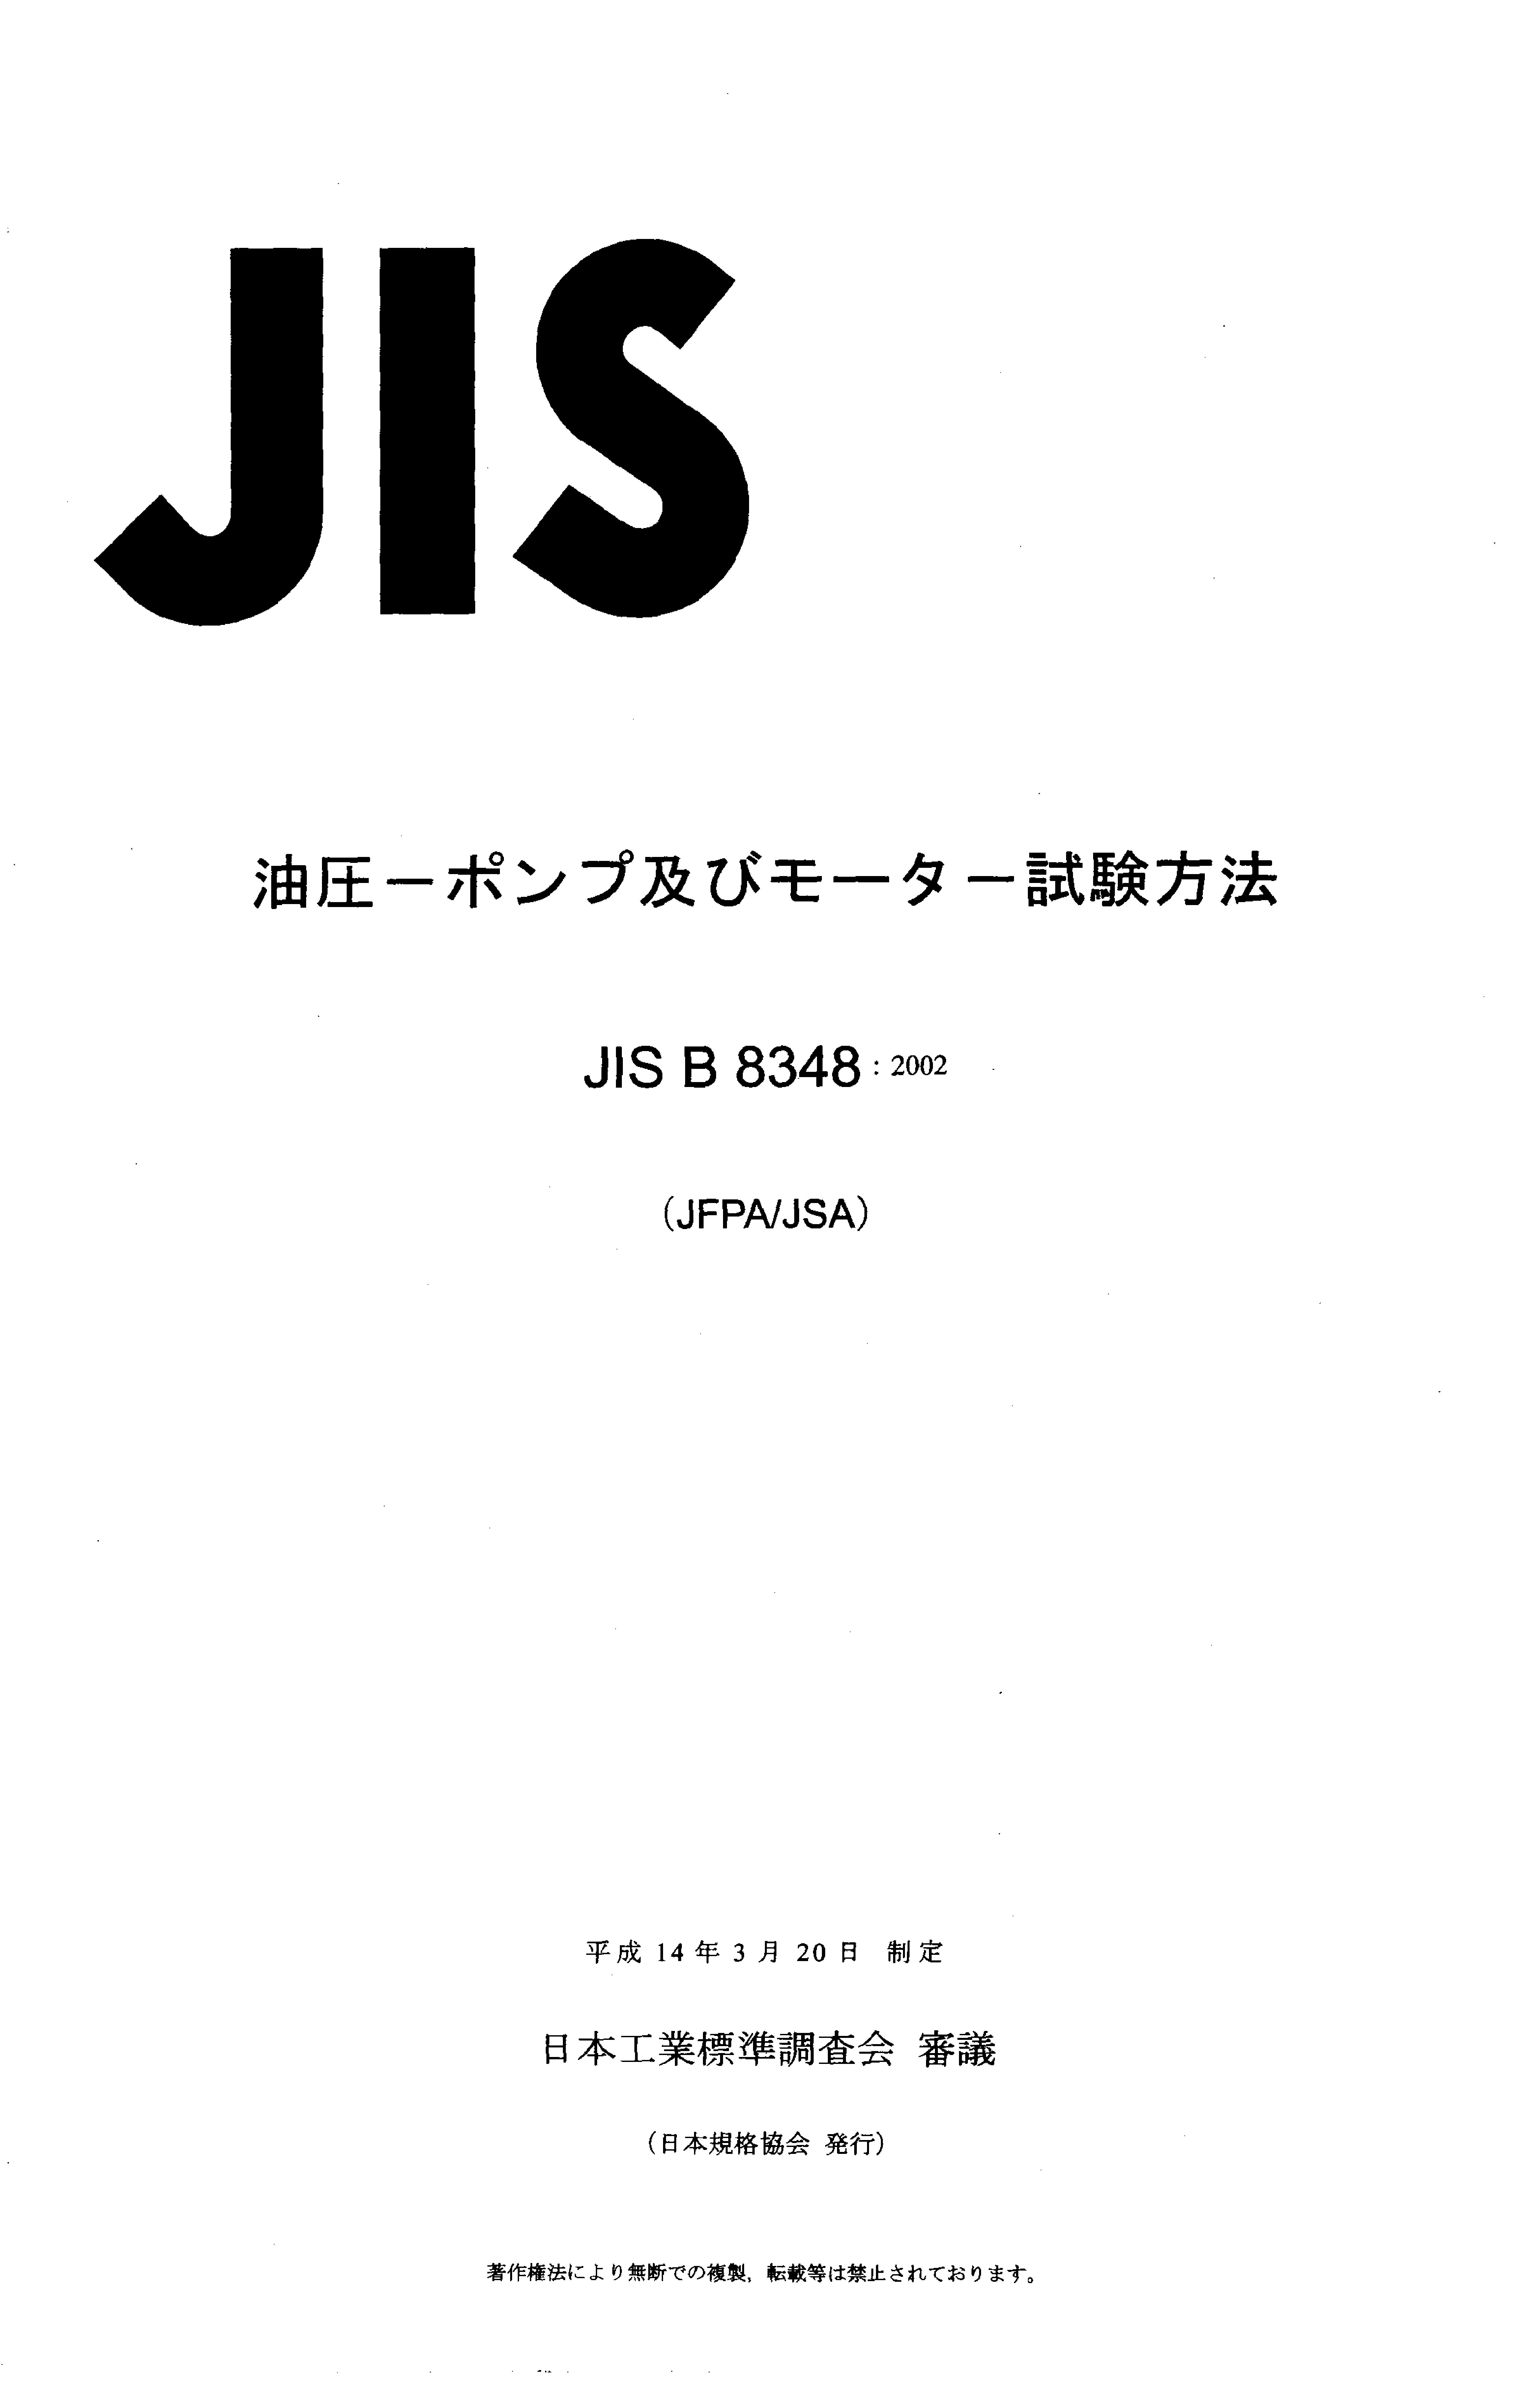 JIS B 8348:2002封面图